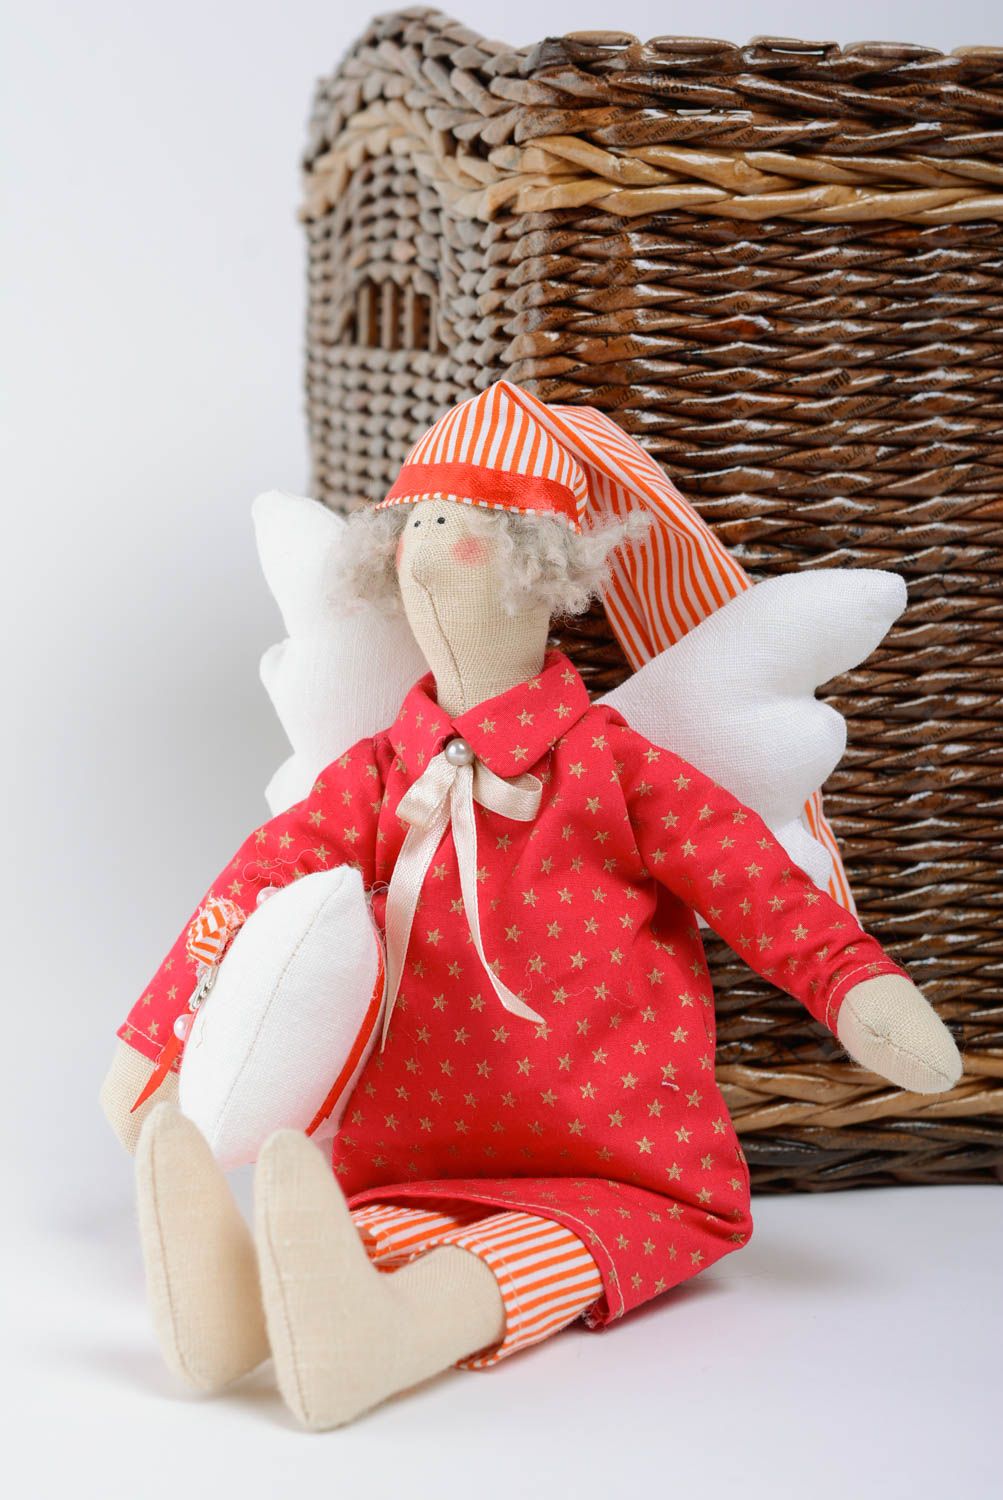 Тканевая игрушка из хлопка мягкая красивая детская ручной работы Ангел в пижаме фото 1